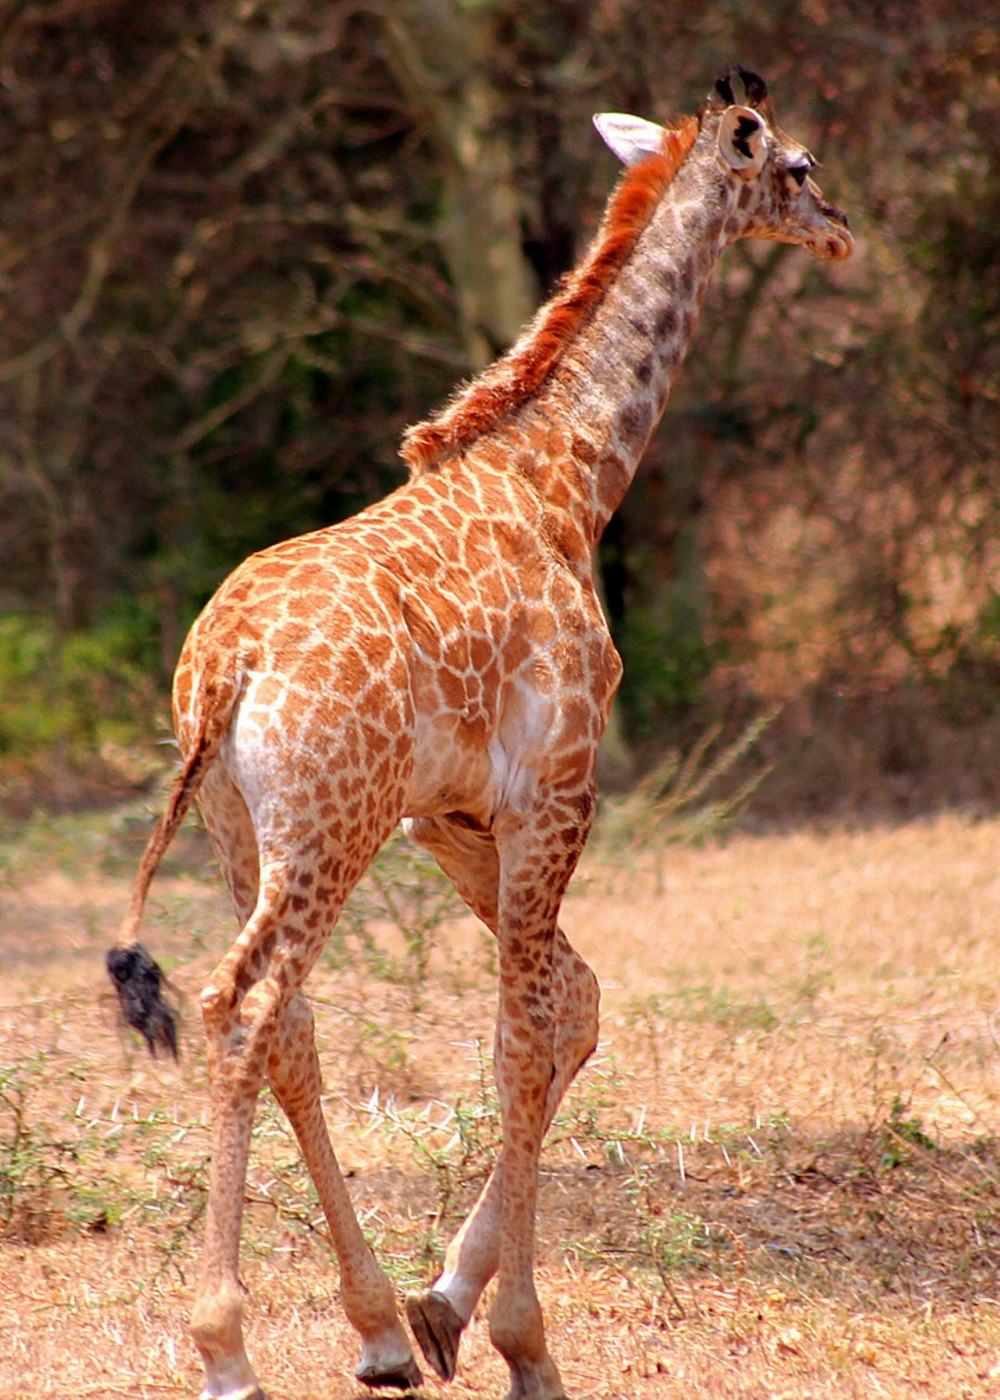 a giraffe walking across a dry grass covered field